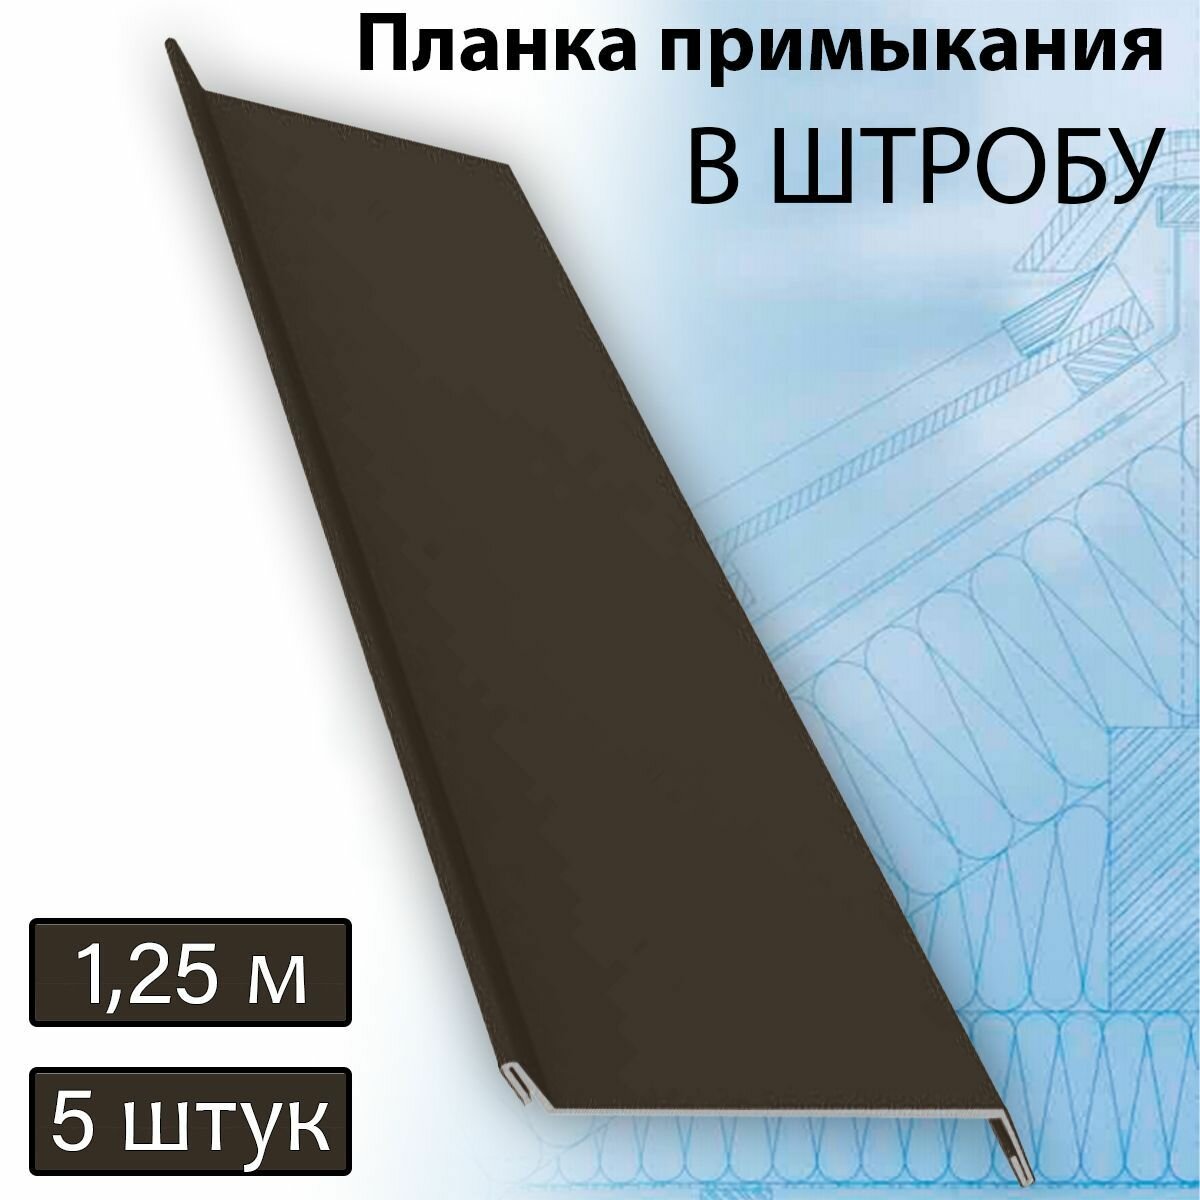 Планка примыкания в штробу 60 мм, 5 штук (RR 32) 1,25 м темно-коричневый - фотография № 1